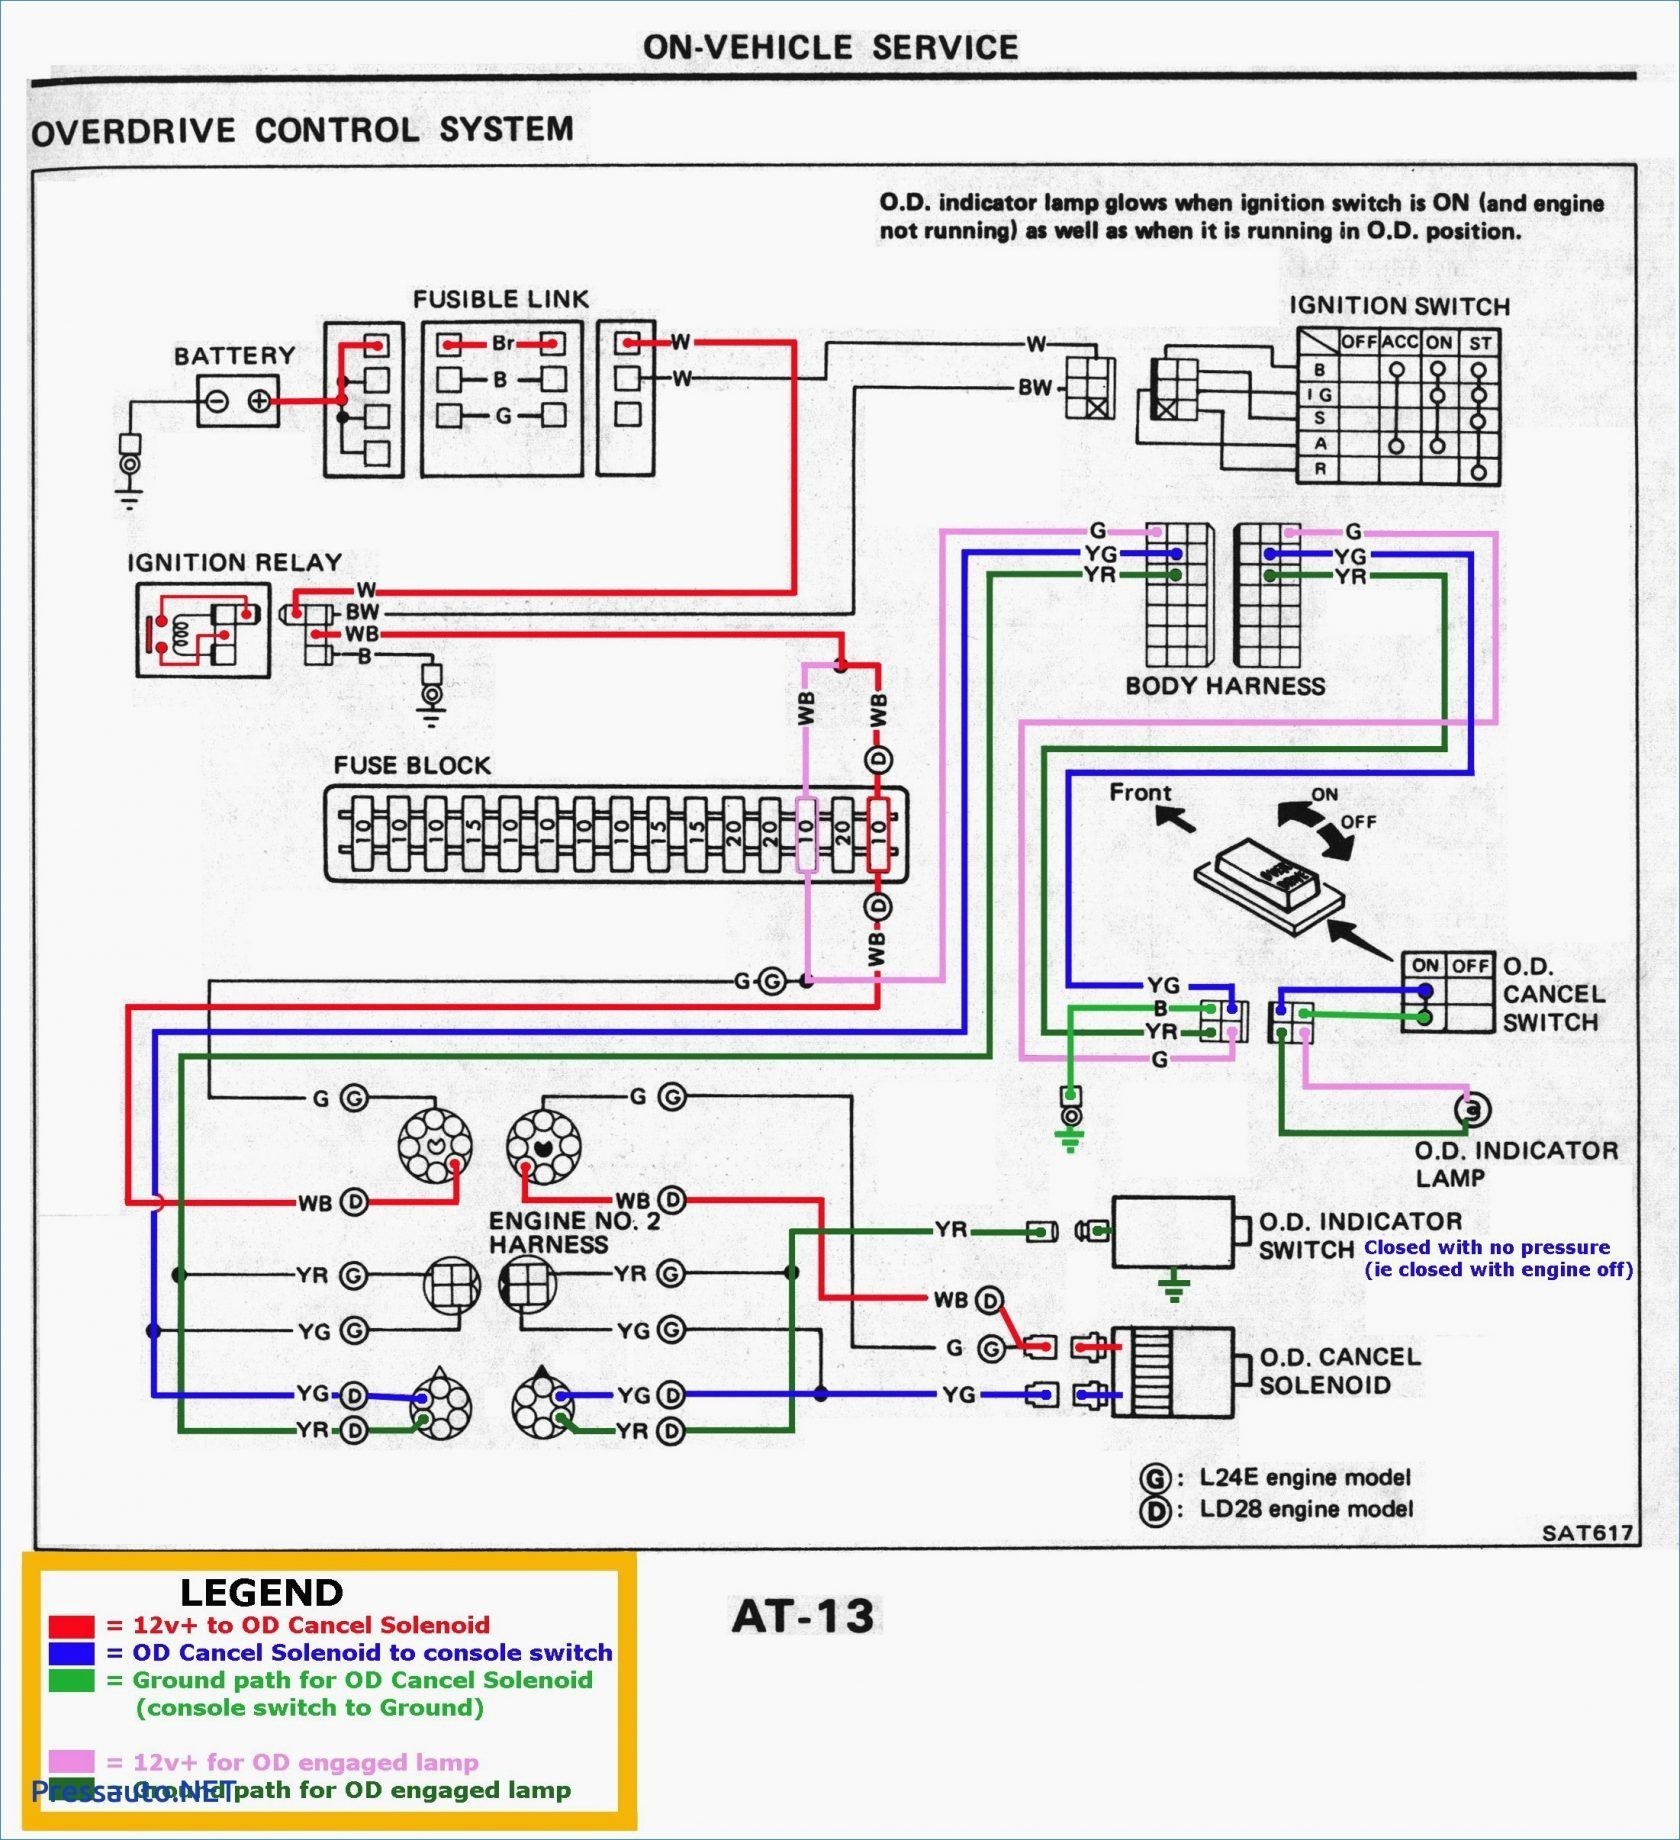 1996 Dodge Grand Caravan Fuse Panel Diagram Wiring Diagram Datasource 2003 Dodge Grand Caravan Fuse Panel Diagram